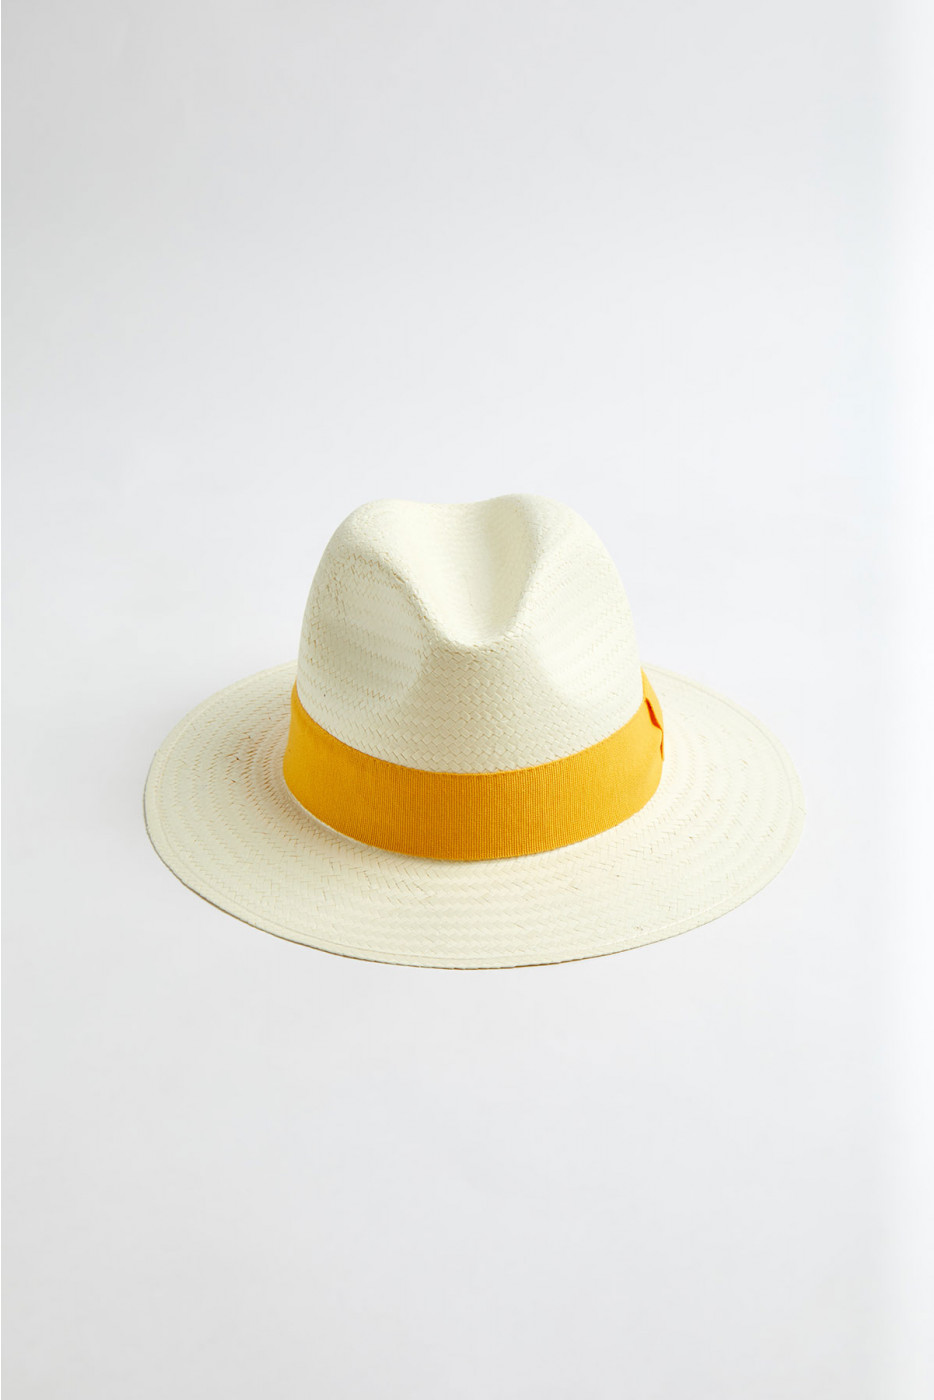 Chapeau de plage Panama Soleil PANAMA CHAPEAU 